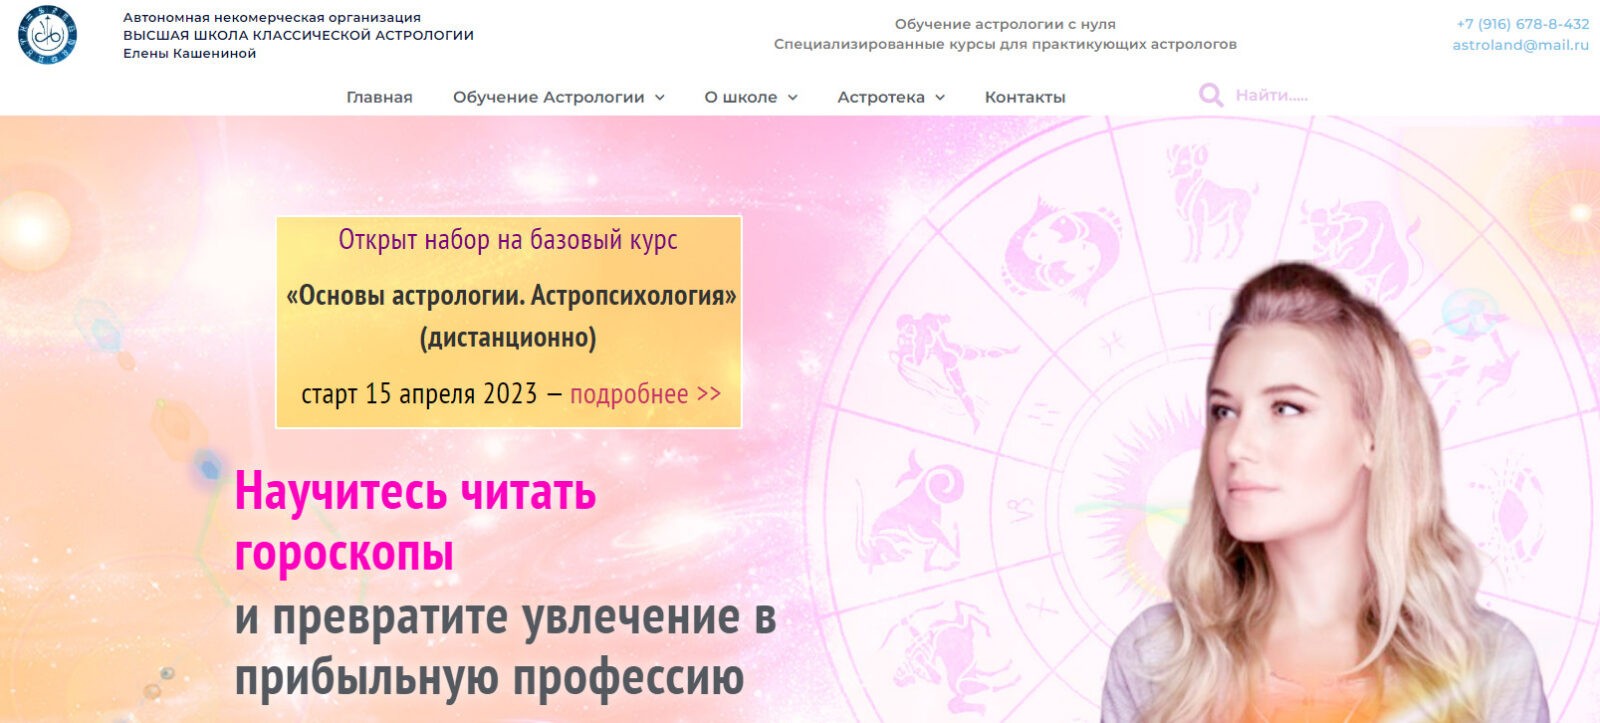 Высшая школа классической астрологии сайт